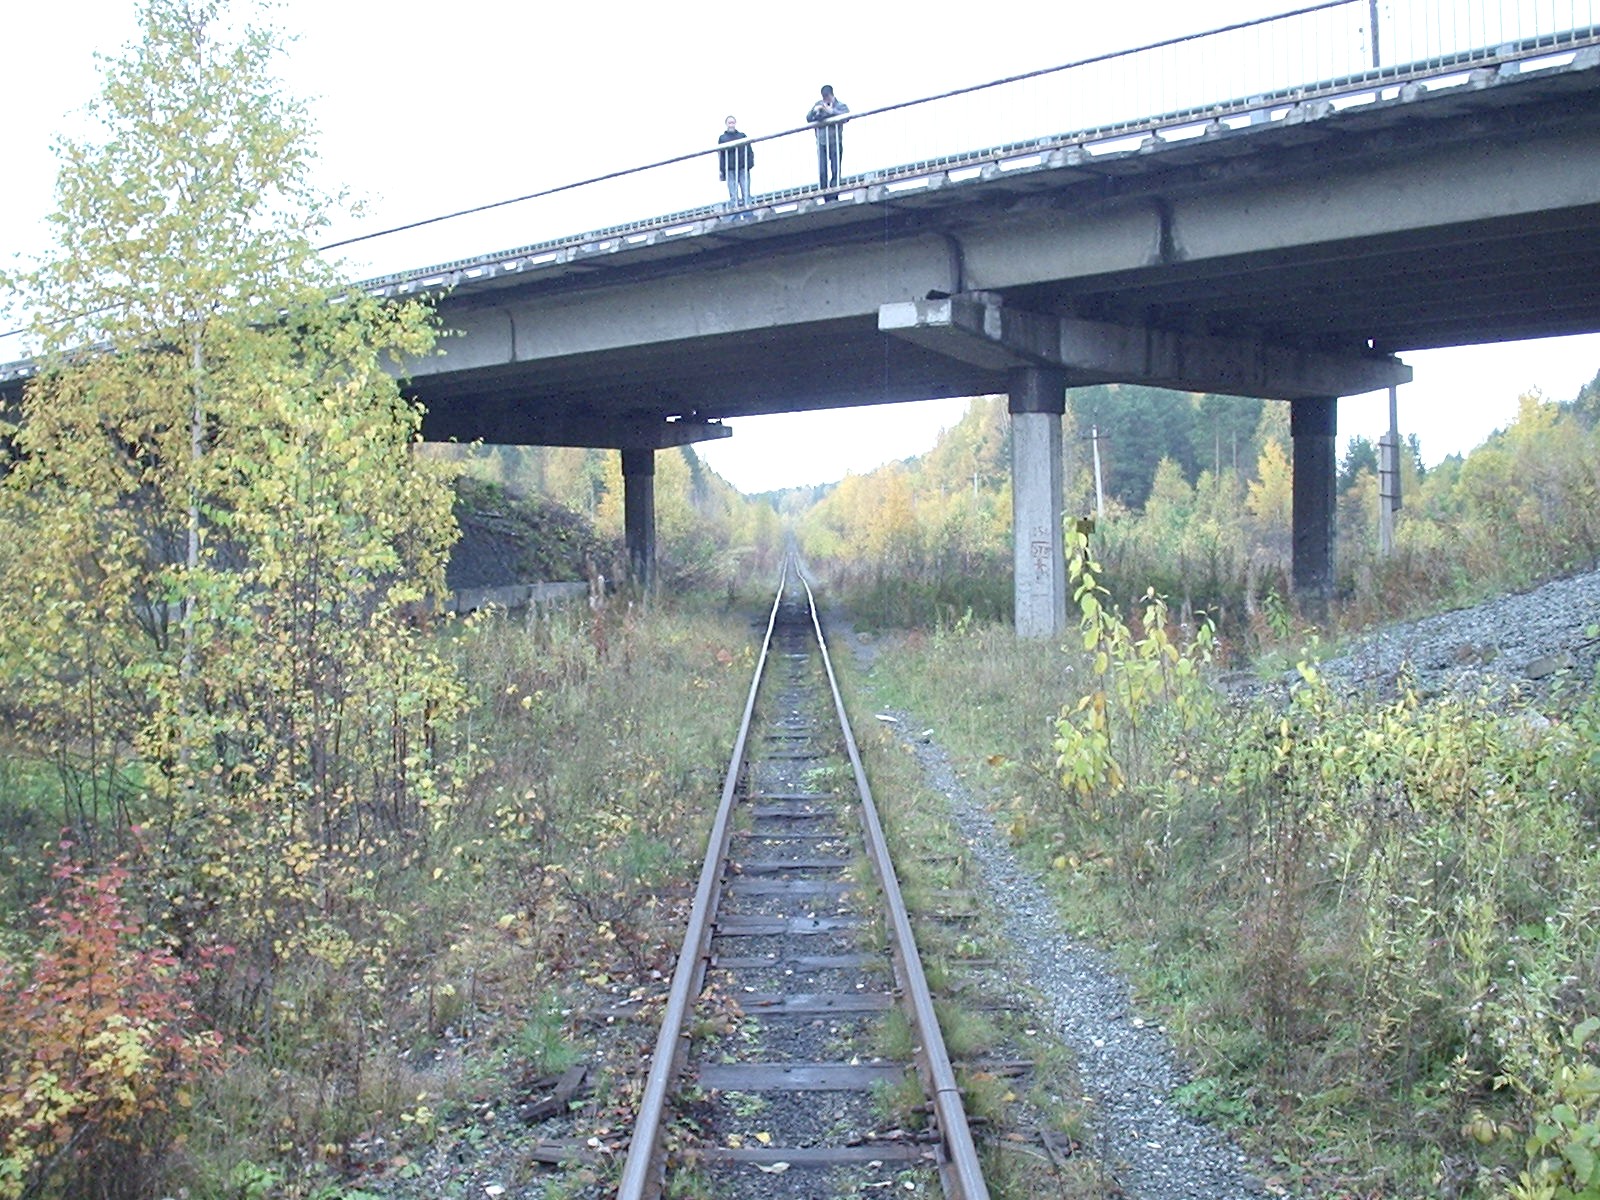 Висимо-Уткинская узкоколейная железная дорога  - фотографии, сделанные в 2006 году (часть 4)